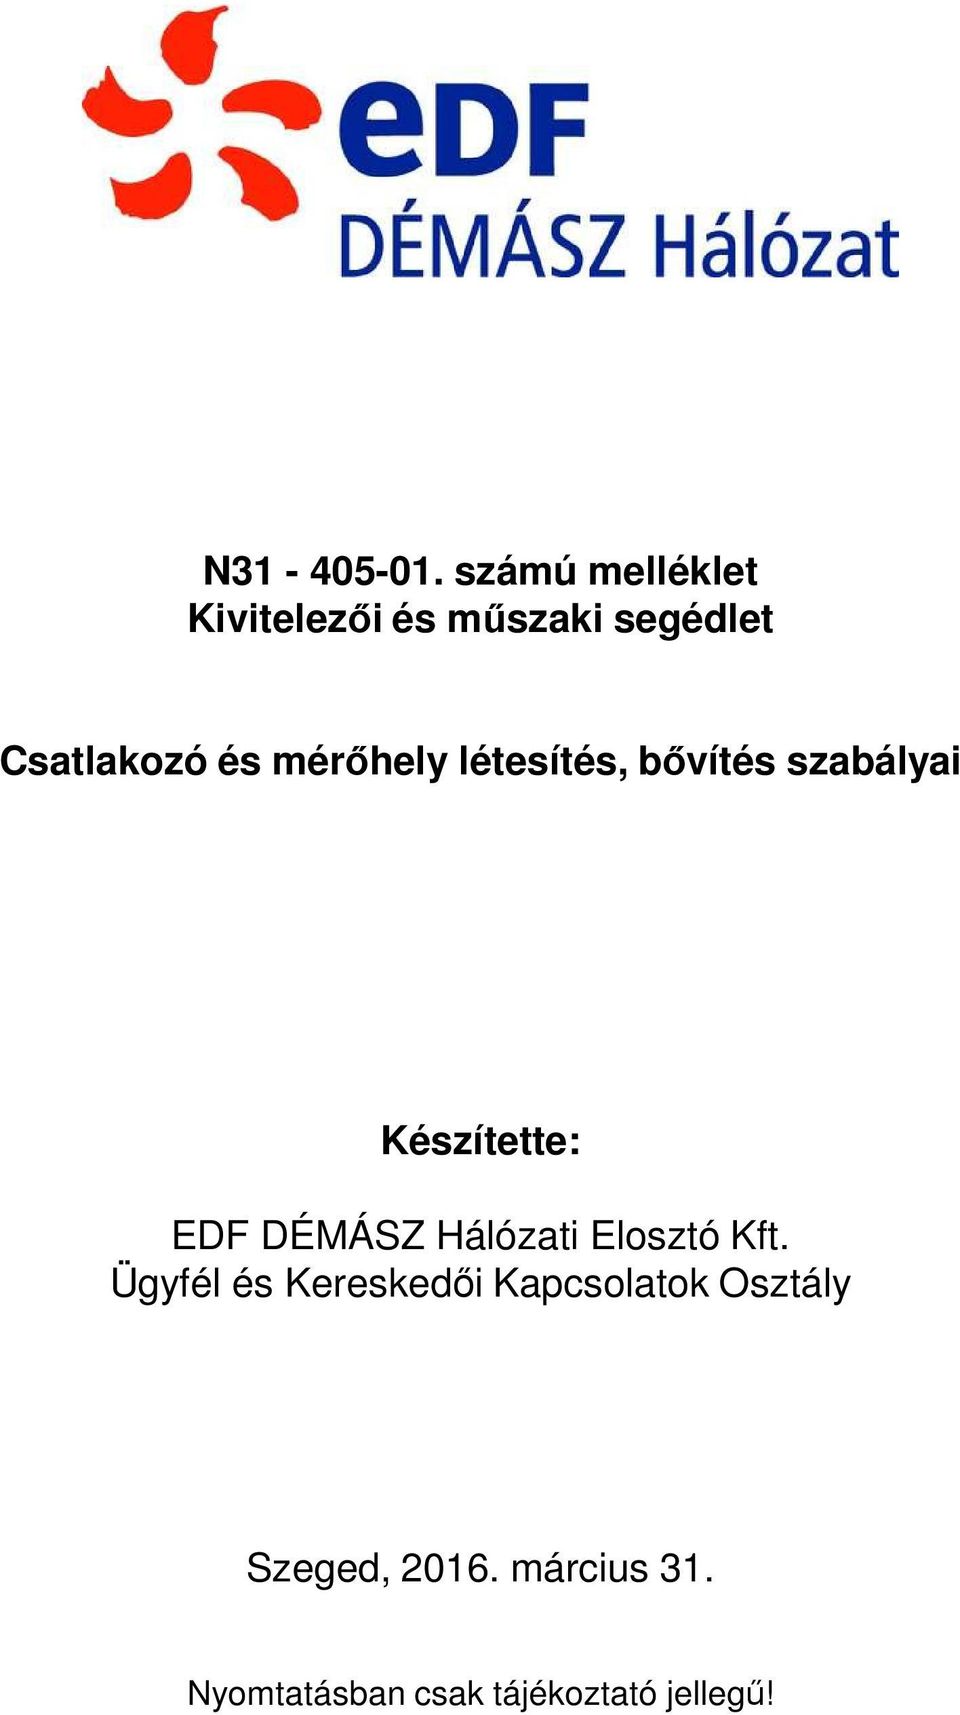 Készítette: EDF DÉMÁSZ Hálózati Elosztó Kft.